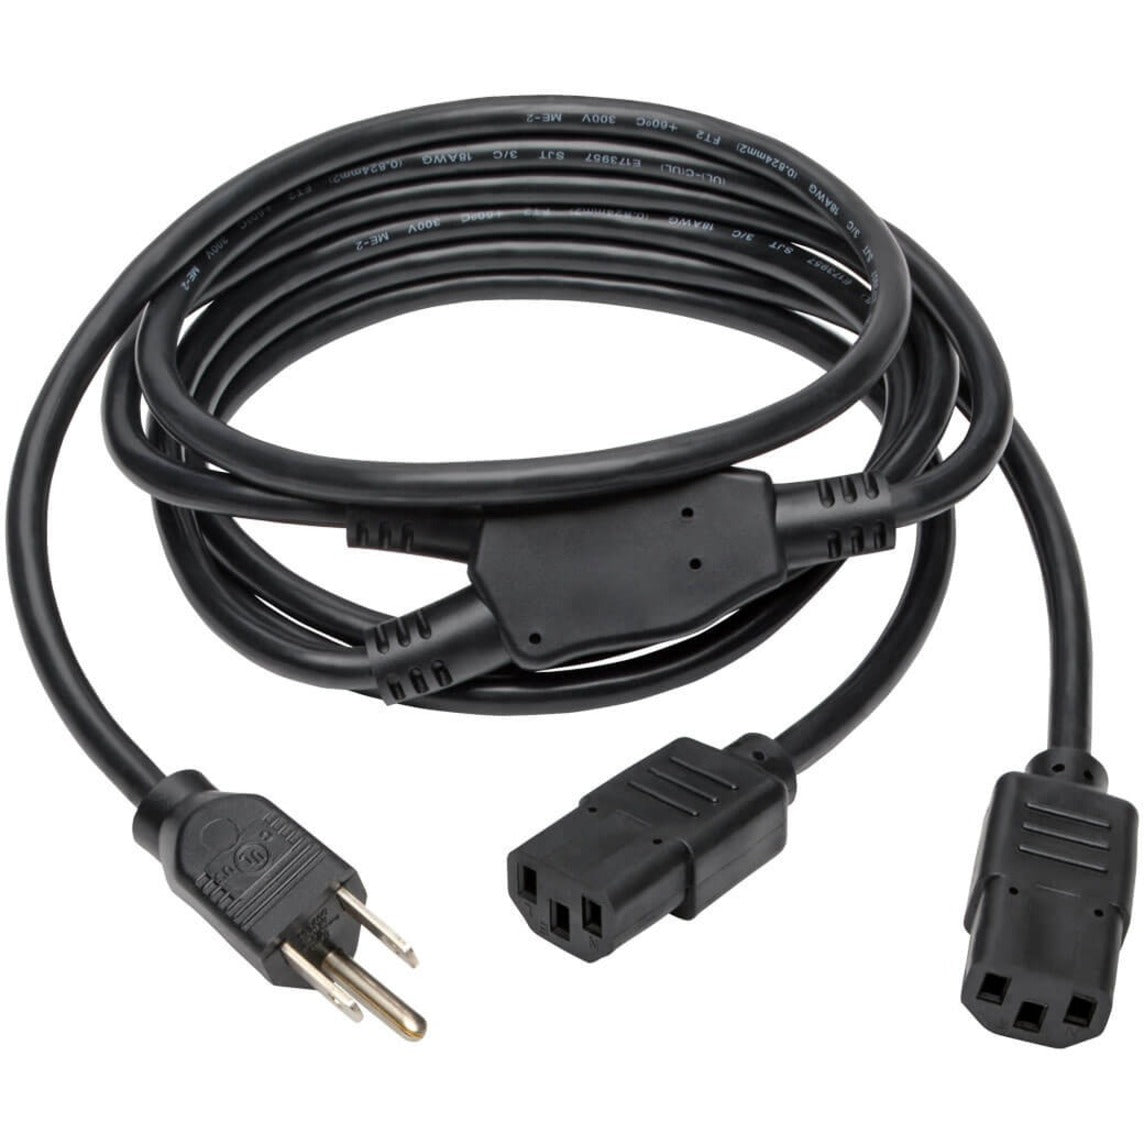 Tripp Lite P006-006-2 Splitter Cable 6ft Power Cord, NEMA 5-15P to 2 x C13 Y Splitter Cable